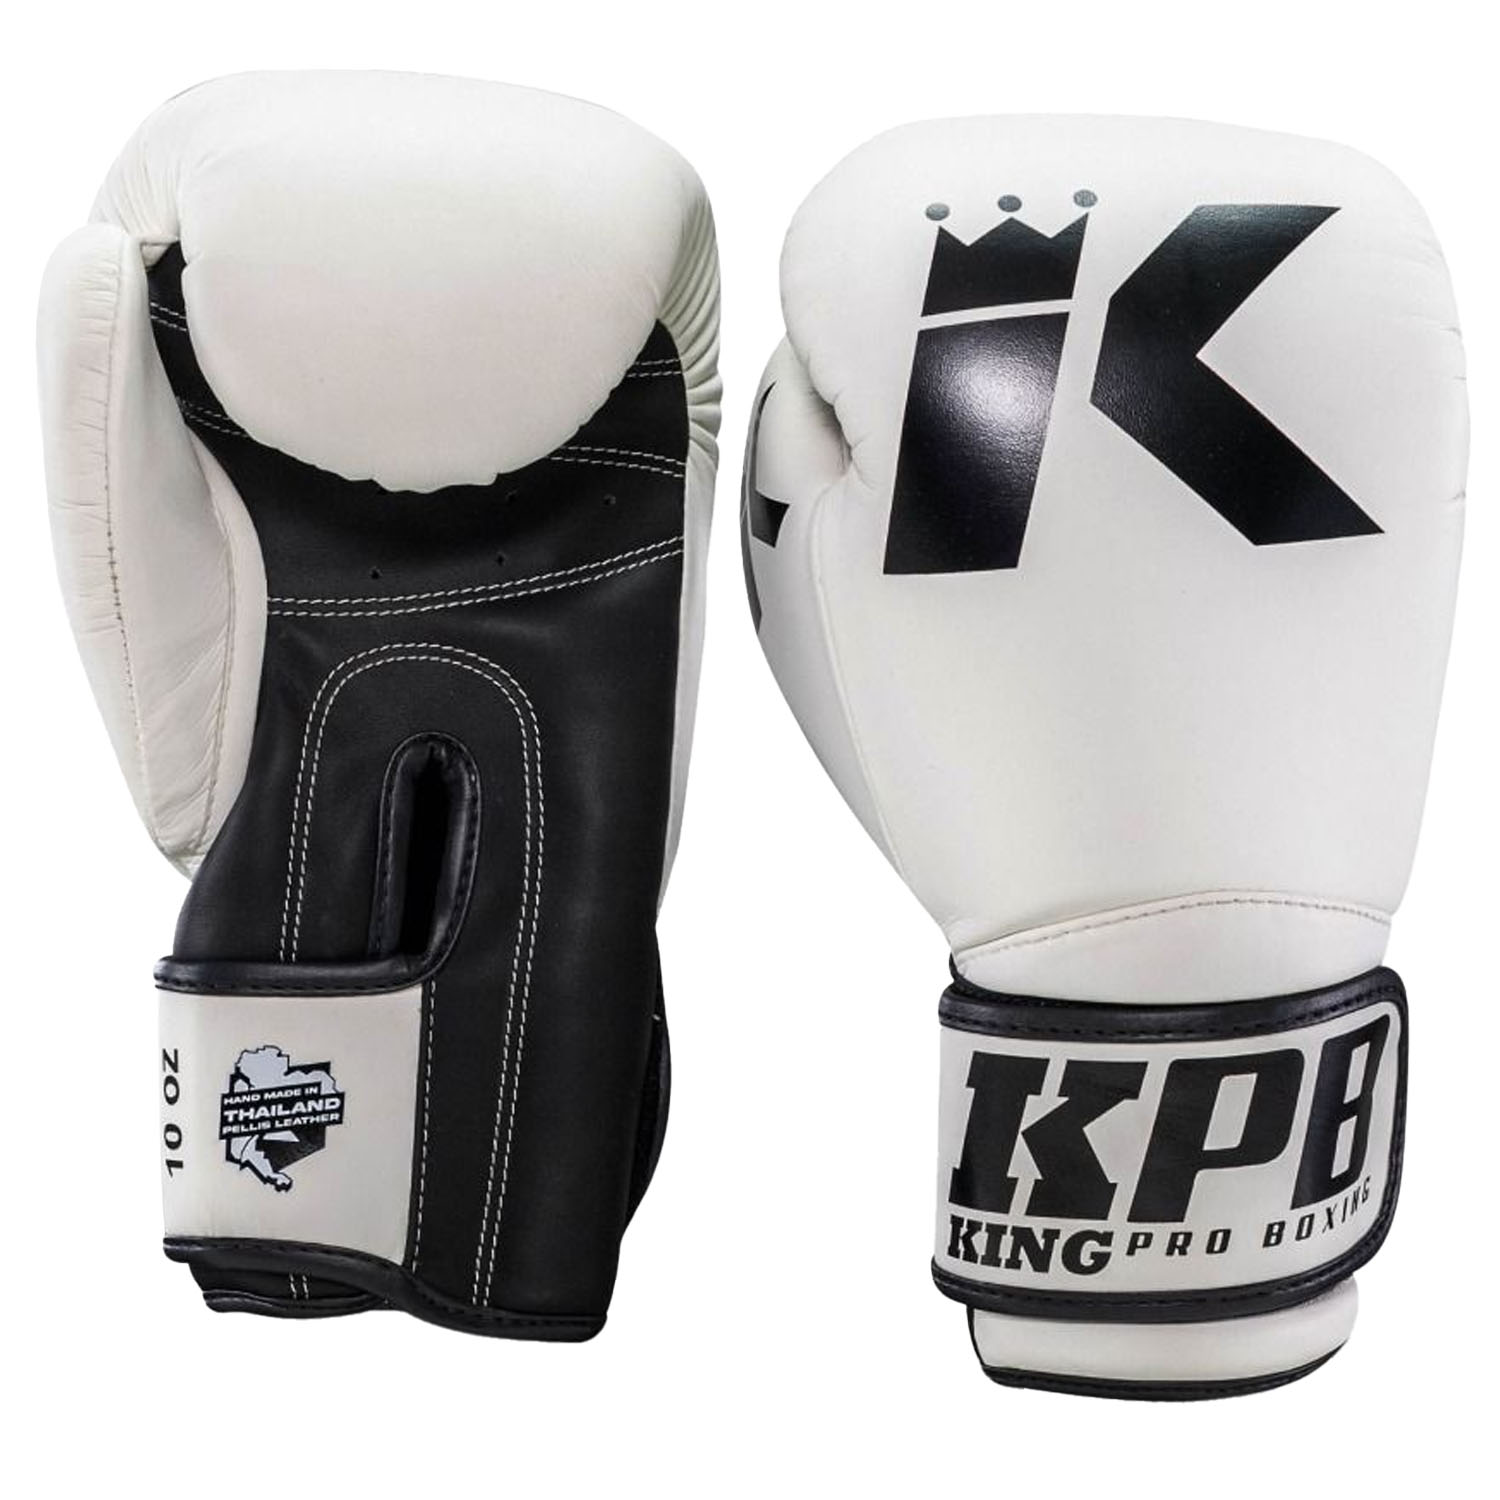 KING PRO BOXING Boxing Gloves, BGK 2, white, 16 Oz